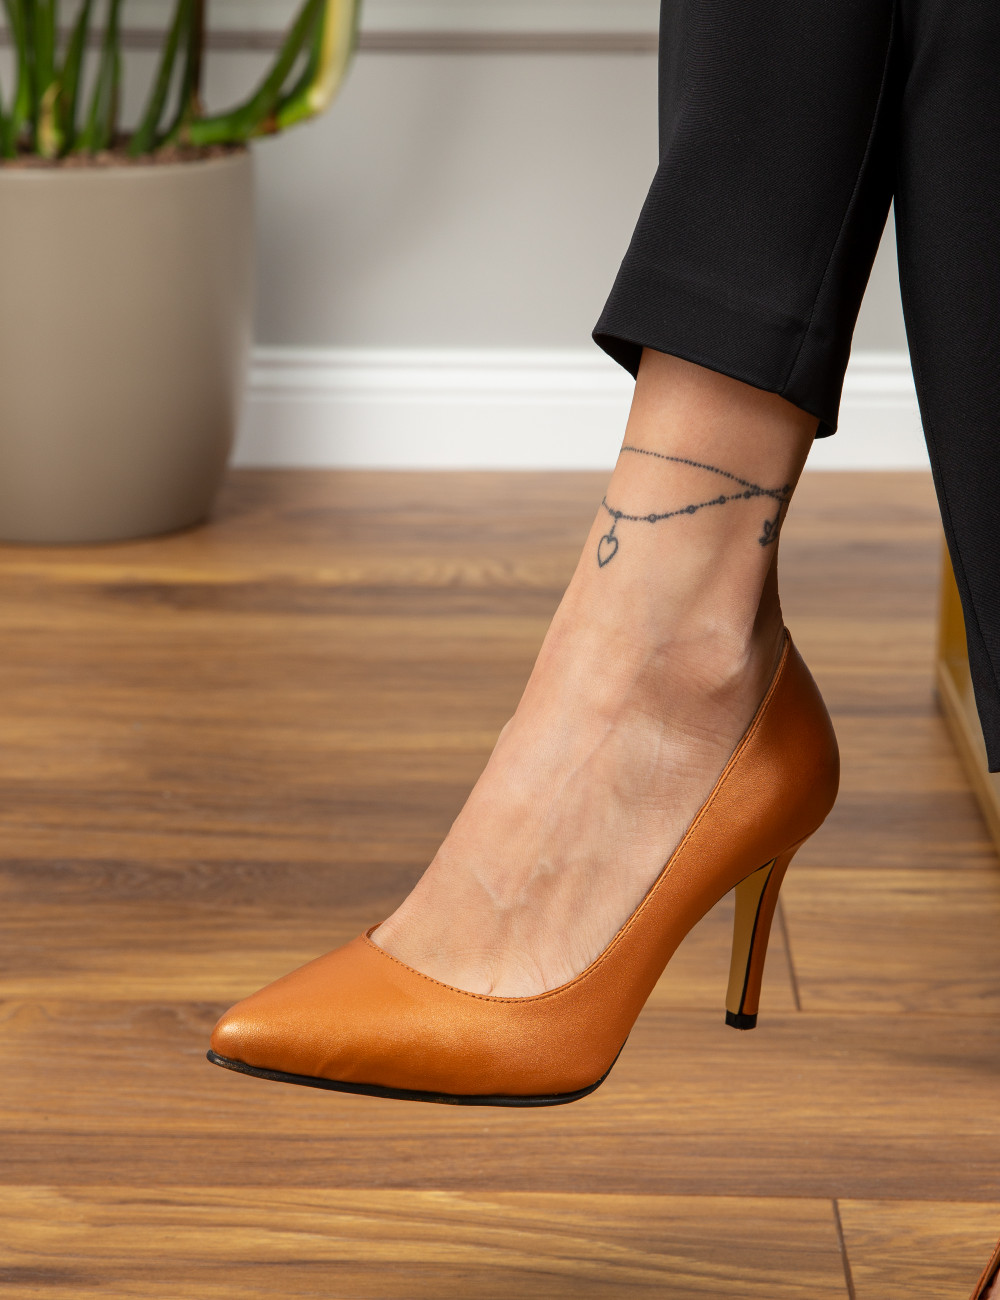 Hakiki Deri Bronz Rengi Stiletto Kadın Topuklu Ayakkabı - D2029ZBRNM01